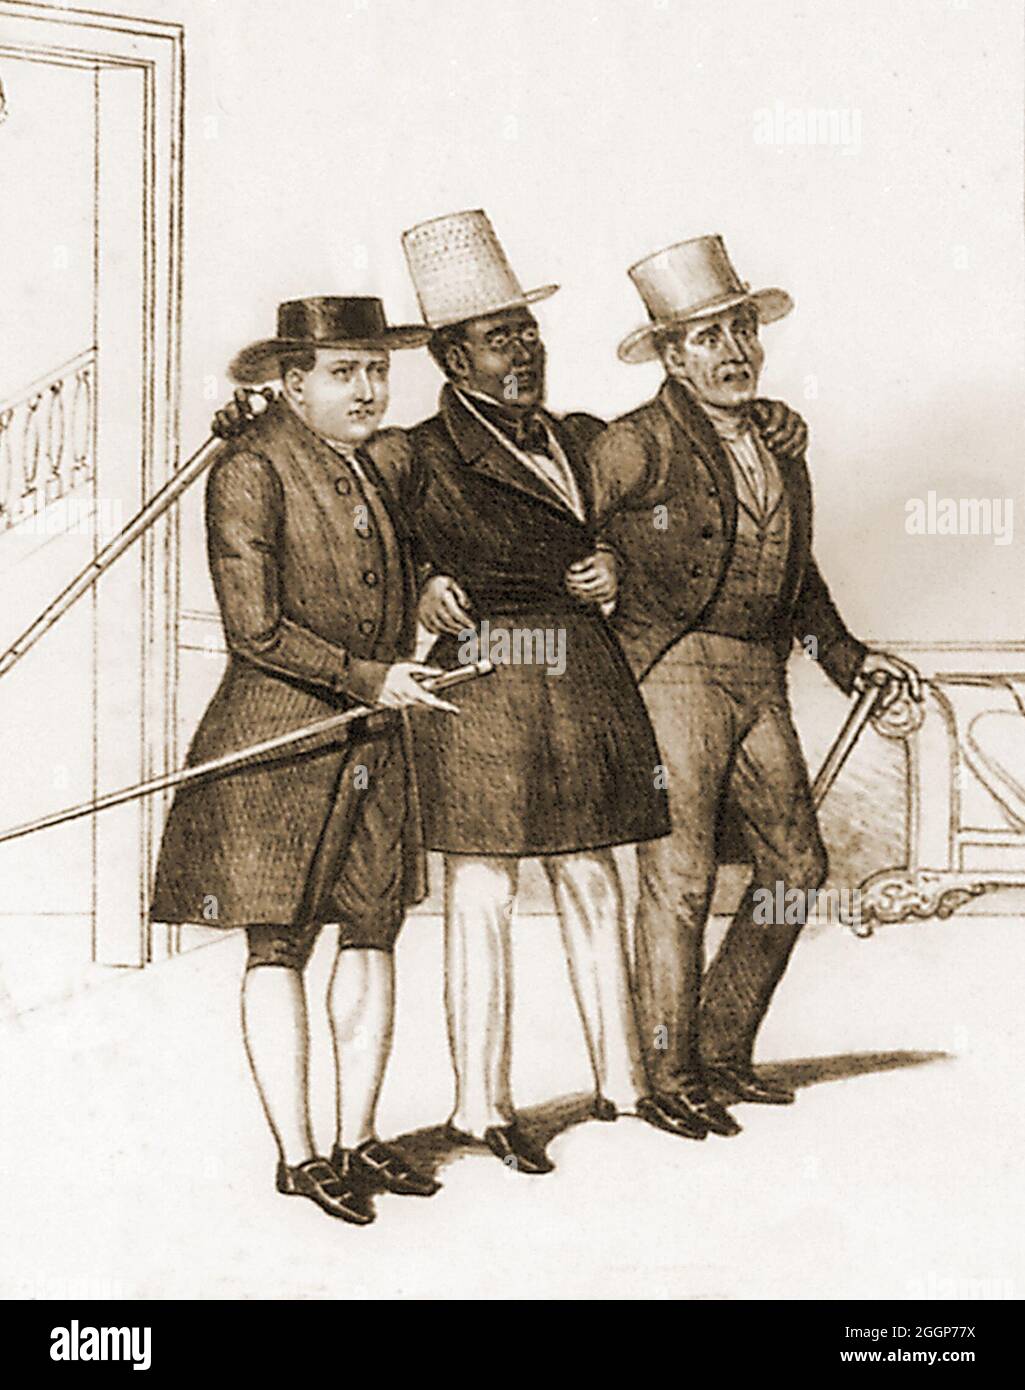 David Ruggles (1810-1849) war ein afroamerikanischer Abolitionist in New York, der flüchtigen Sklaven, darunter Frederick Douglass, half, freie Staaten zu erreichen. Er war Drucker und Journalist in New York City im Jahr 1830s und eröffnete die erste schwarze Buchhandlung in den Vereinigten Staaten. Detail einer Lithographie mit dem Titel die enttäuschten Abolitionisten, von Edward Williams Clay (1799-1857), um 1838. David Ruggles kann in der Mitte gesehen werden. Stockfoto